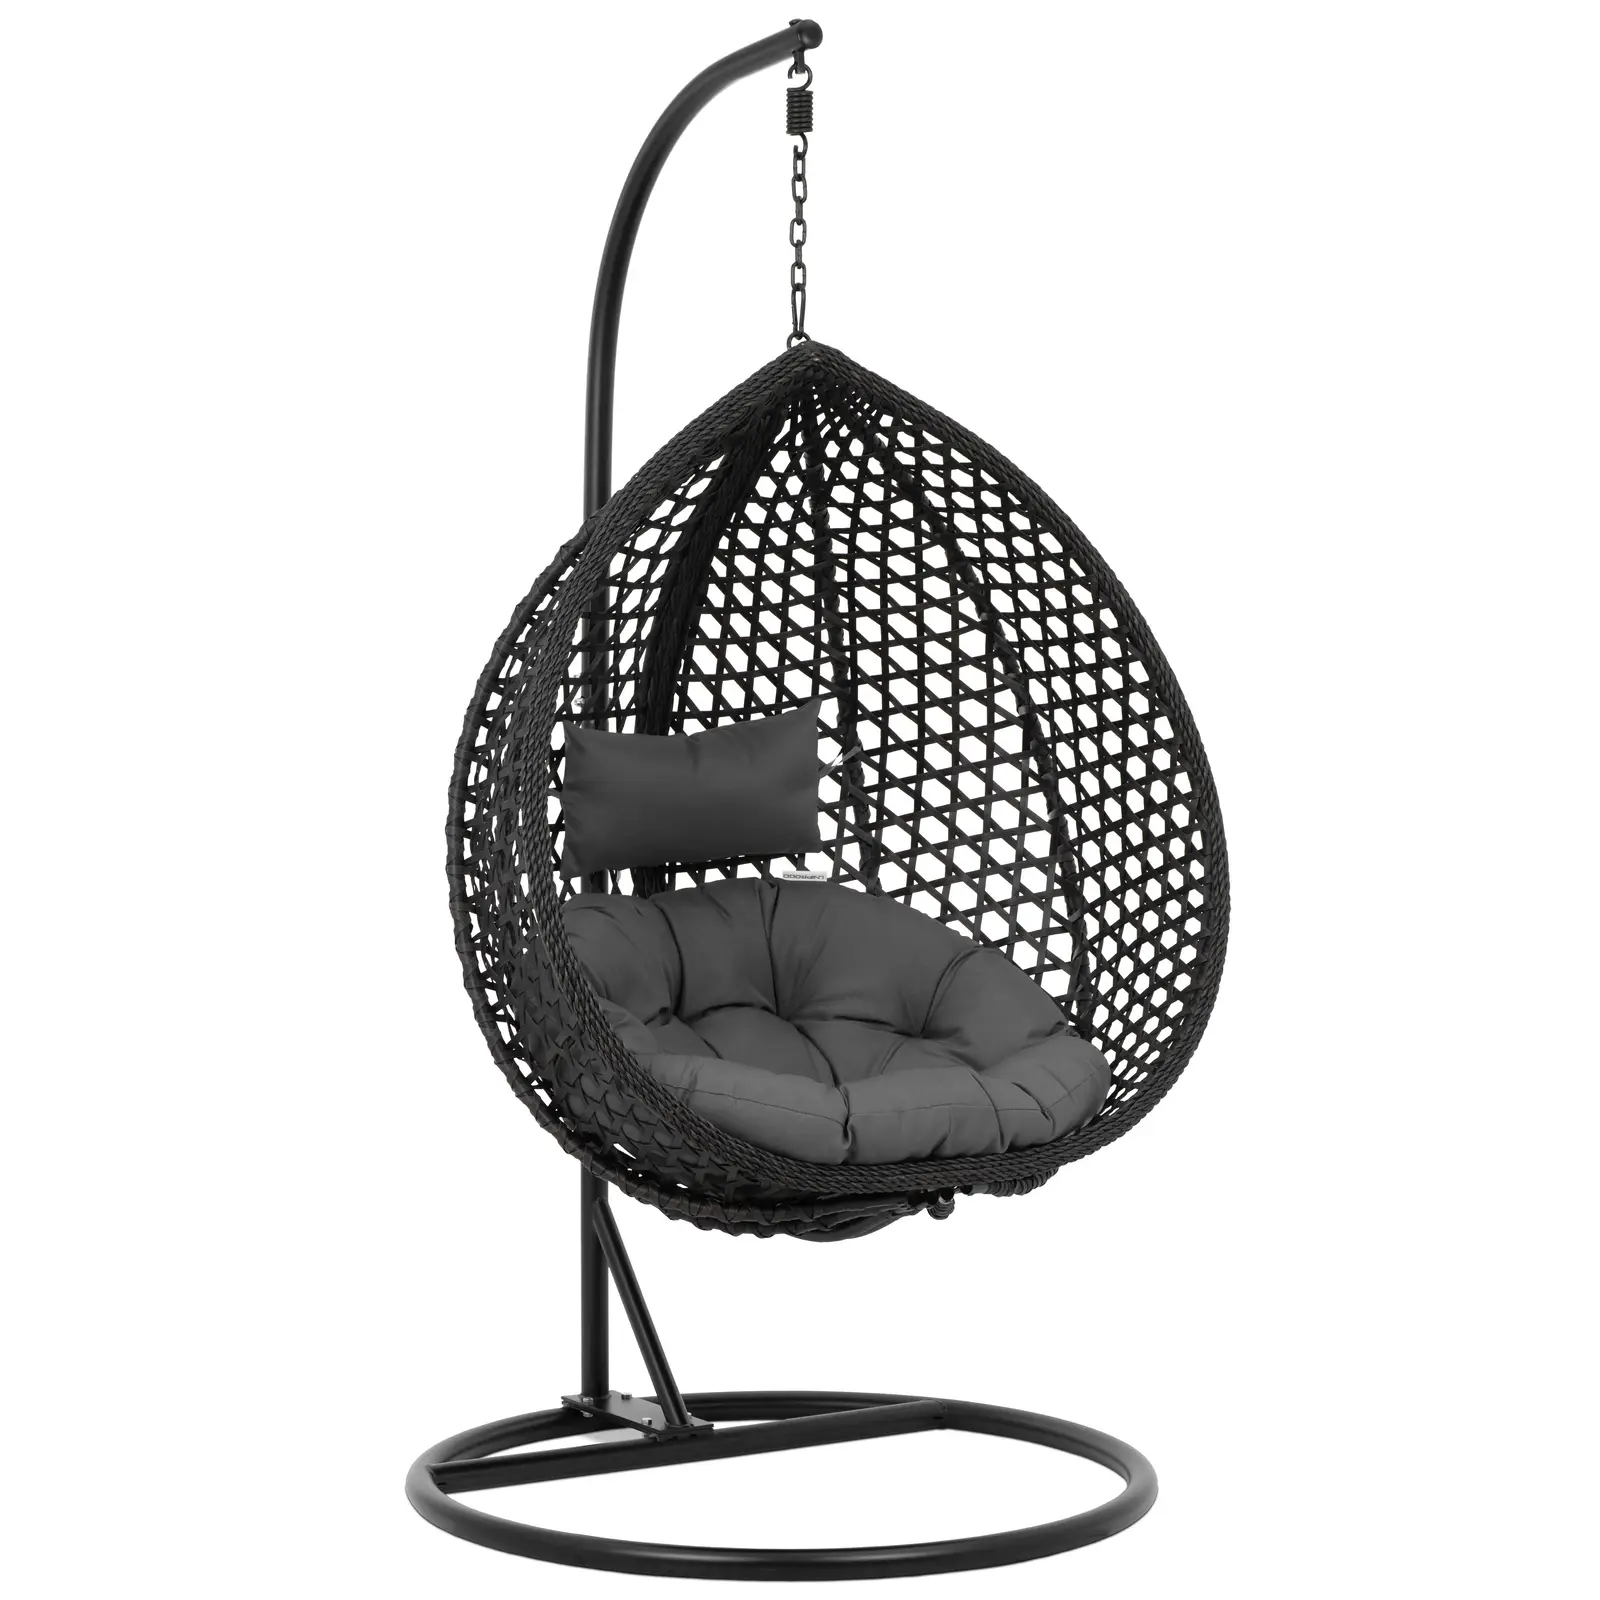 Uniprodo Outdoor-Hängesessel mit Gestell - Sitz zusammenfaltbar - schwarz/grau - Tropfenform